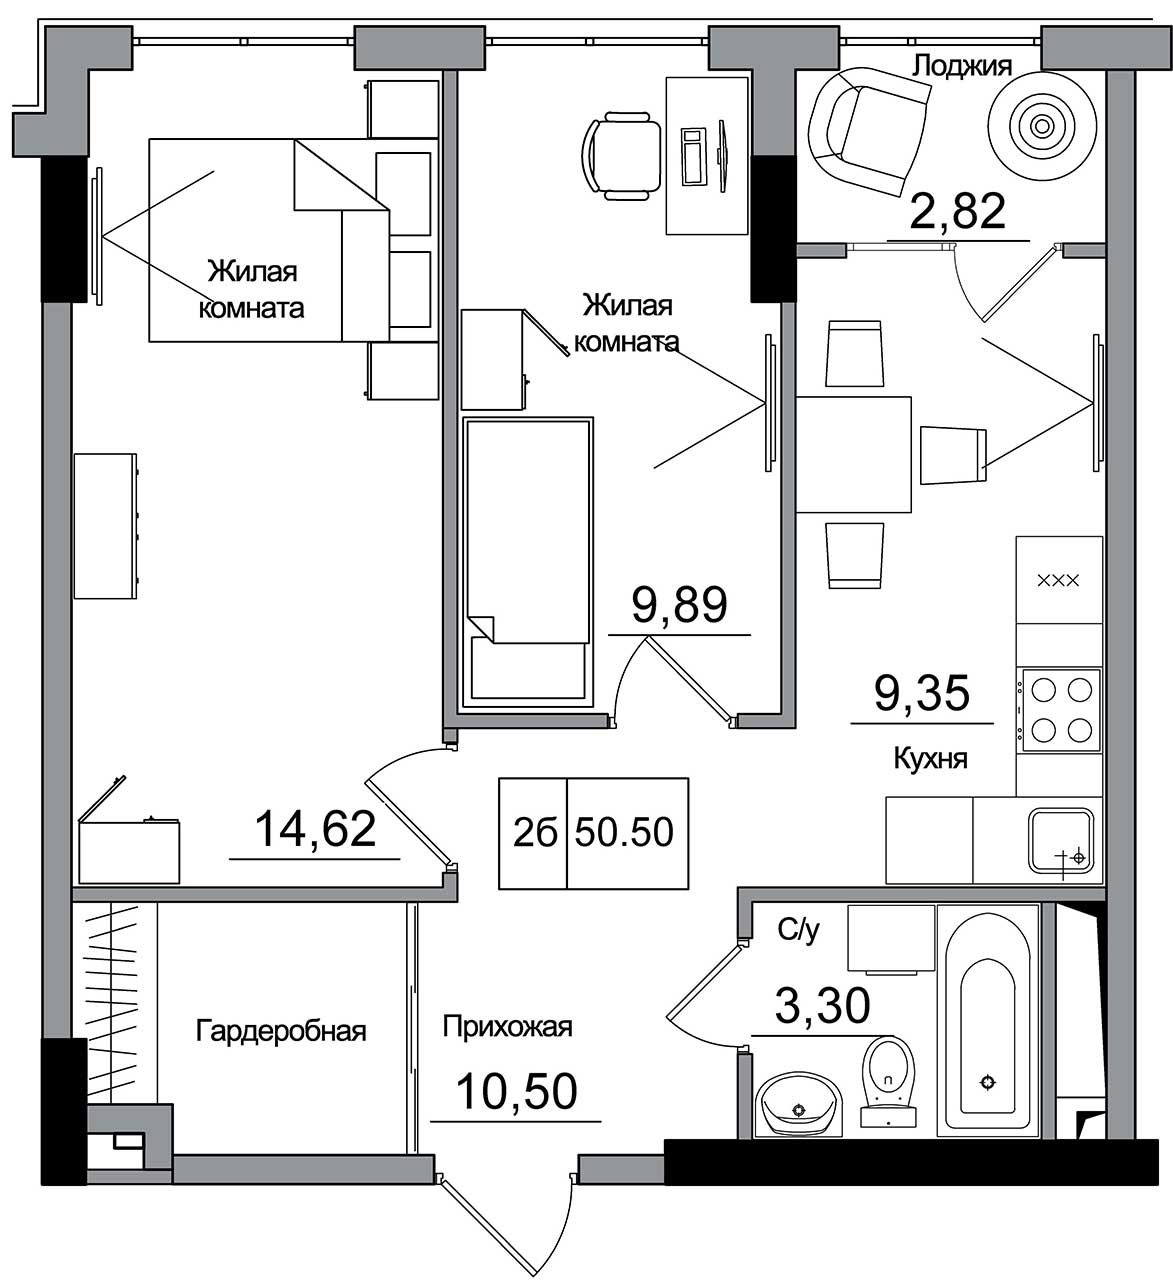 Планировка 2-к квартира площей 50.5м2, AB-16-10/00007.